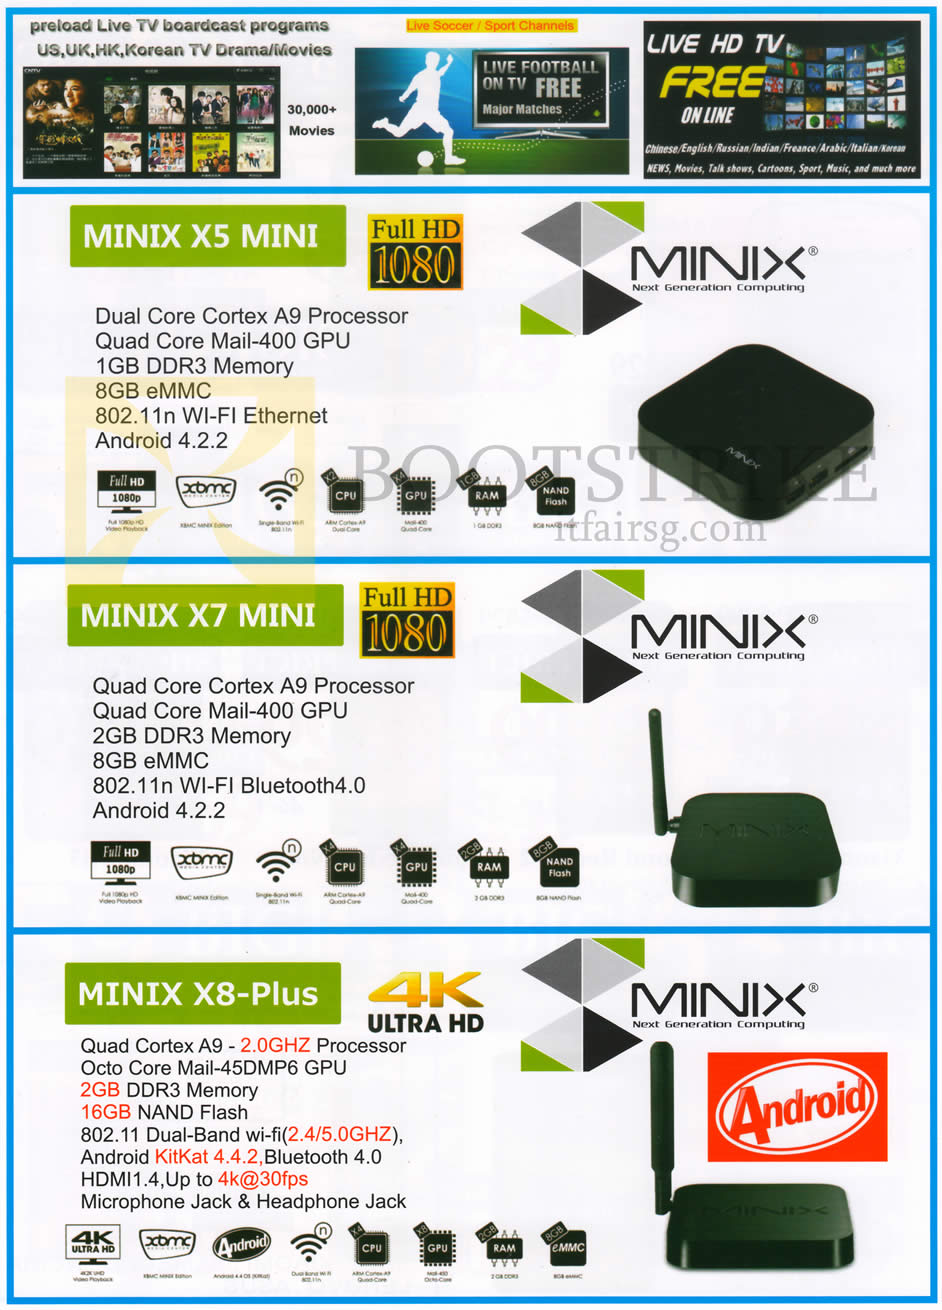 IT SHOW 2015 price list image brochure of J2 Trading Media Player Minix X5 Mini, X7 Mini, X8-Plus